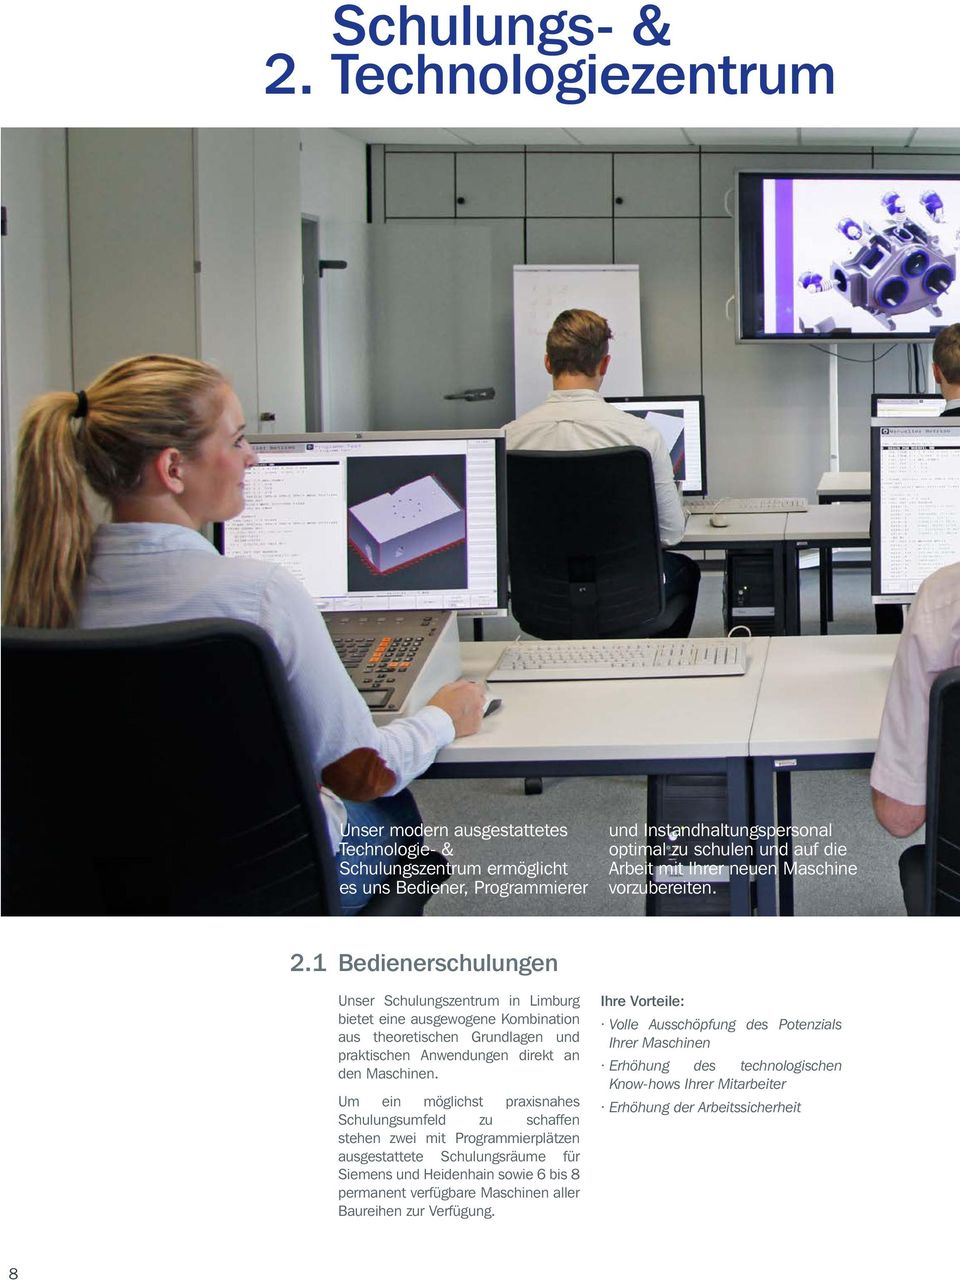 1 Bedienerschulungen Unser Schulungszentrum in Limburg bietet eine ausgewogene Kombination aus theoretischen Grundlagen und praktischen Anwendungen direkt an den Maschinen.